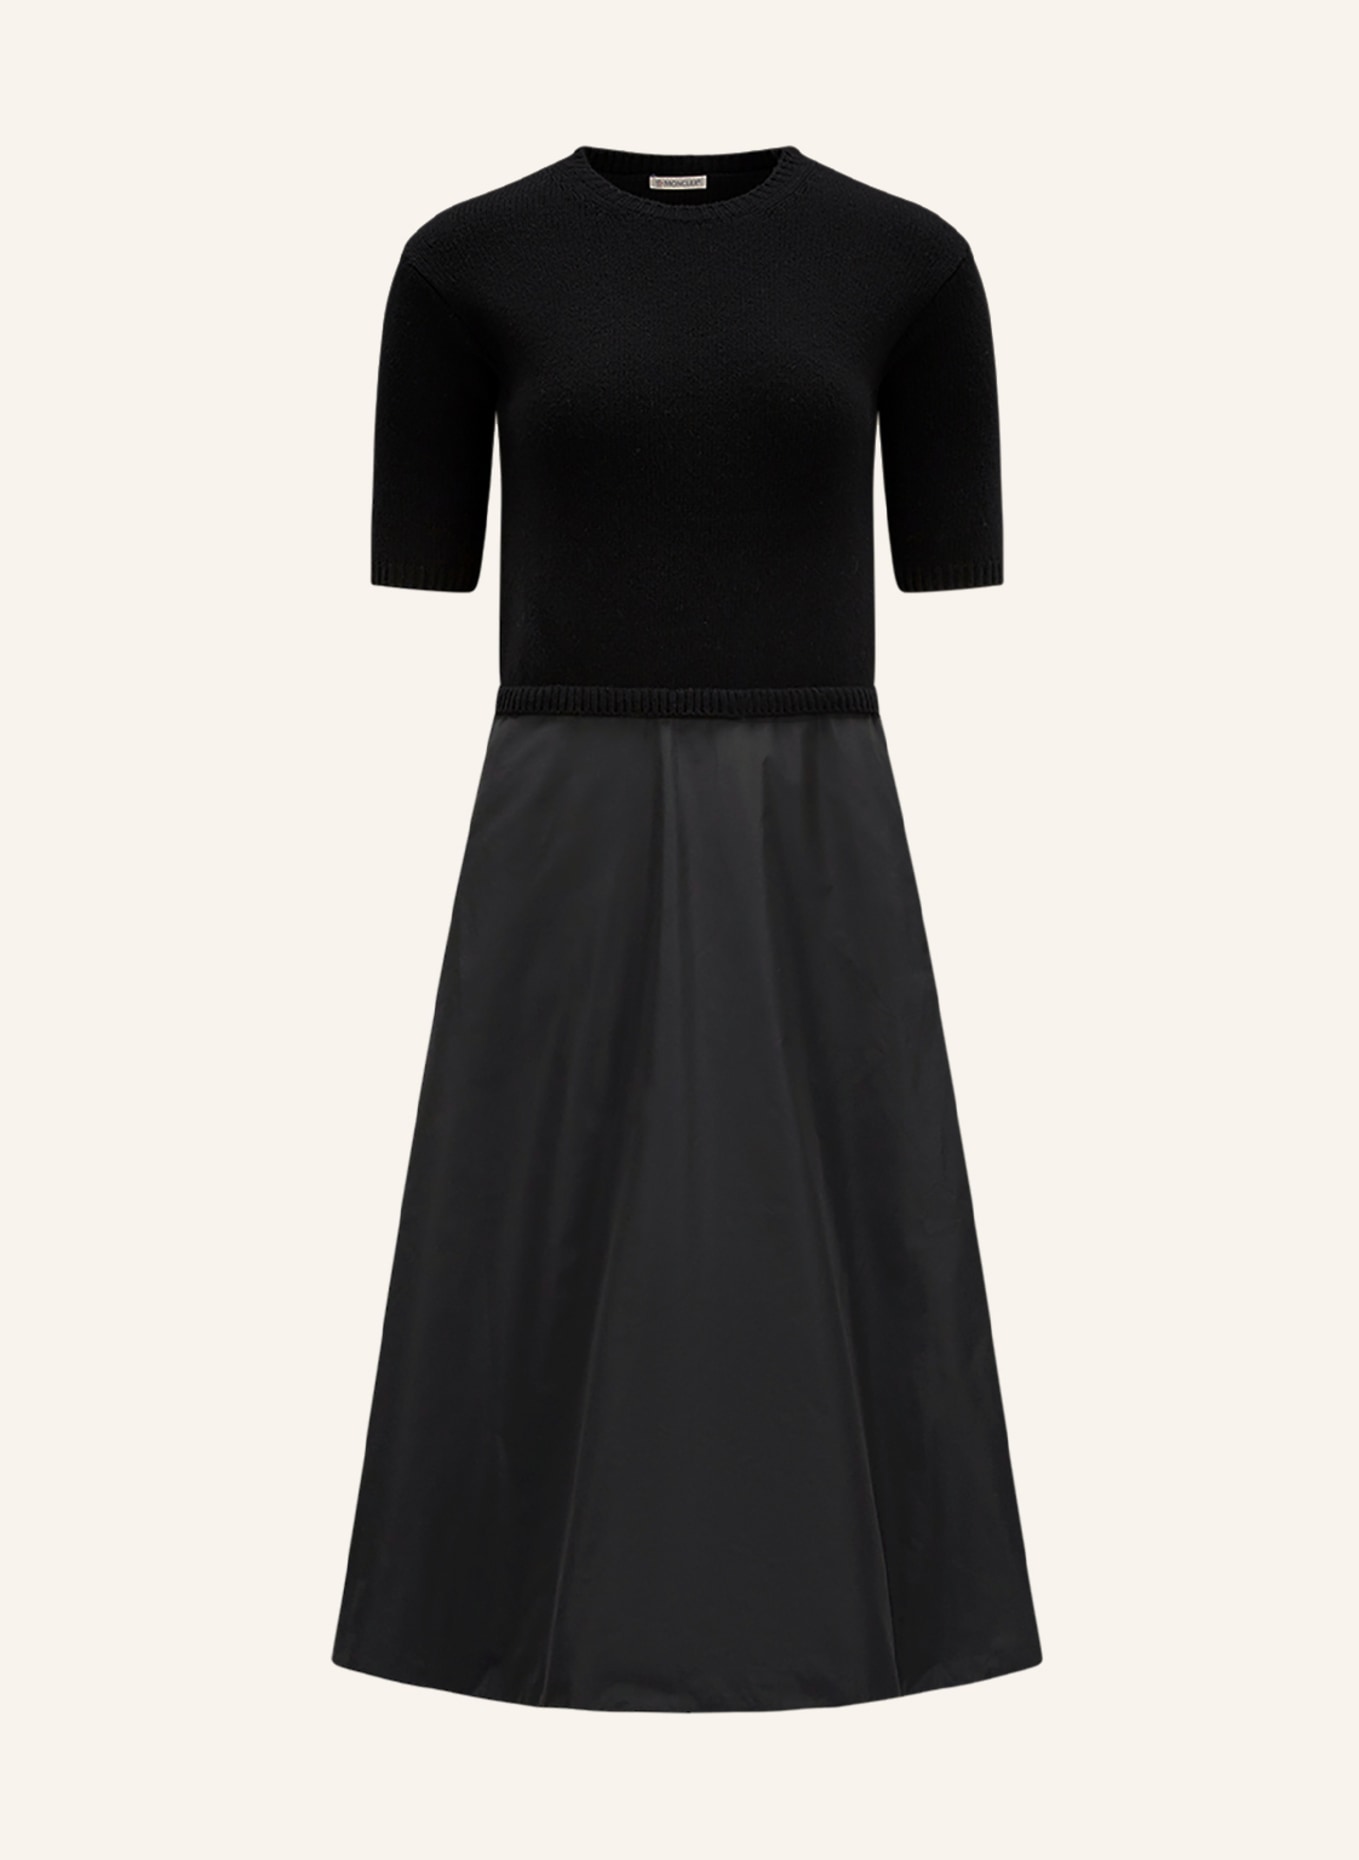 MONCLER Kleid im Materialmix, Farbe: SCHWARZ (Bild 1)